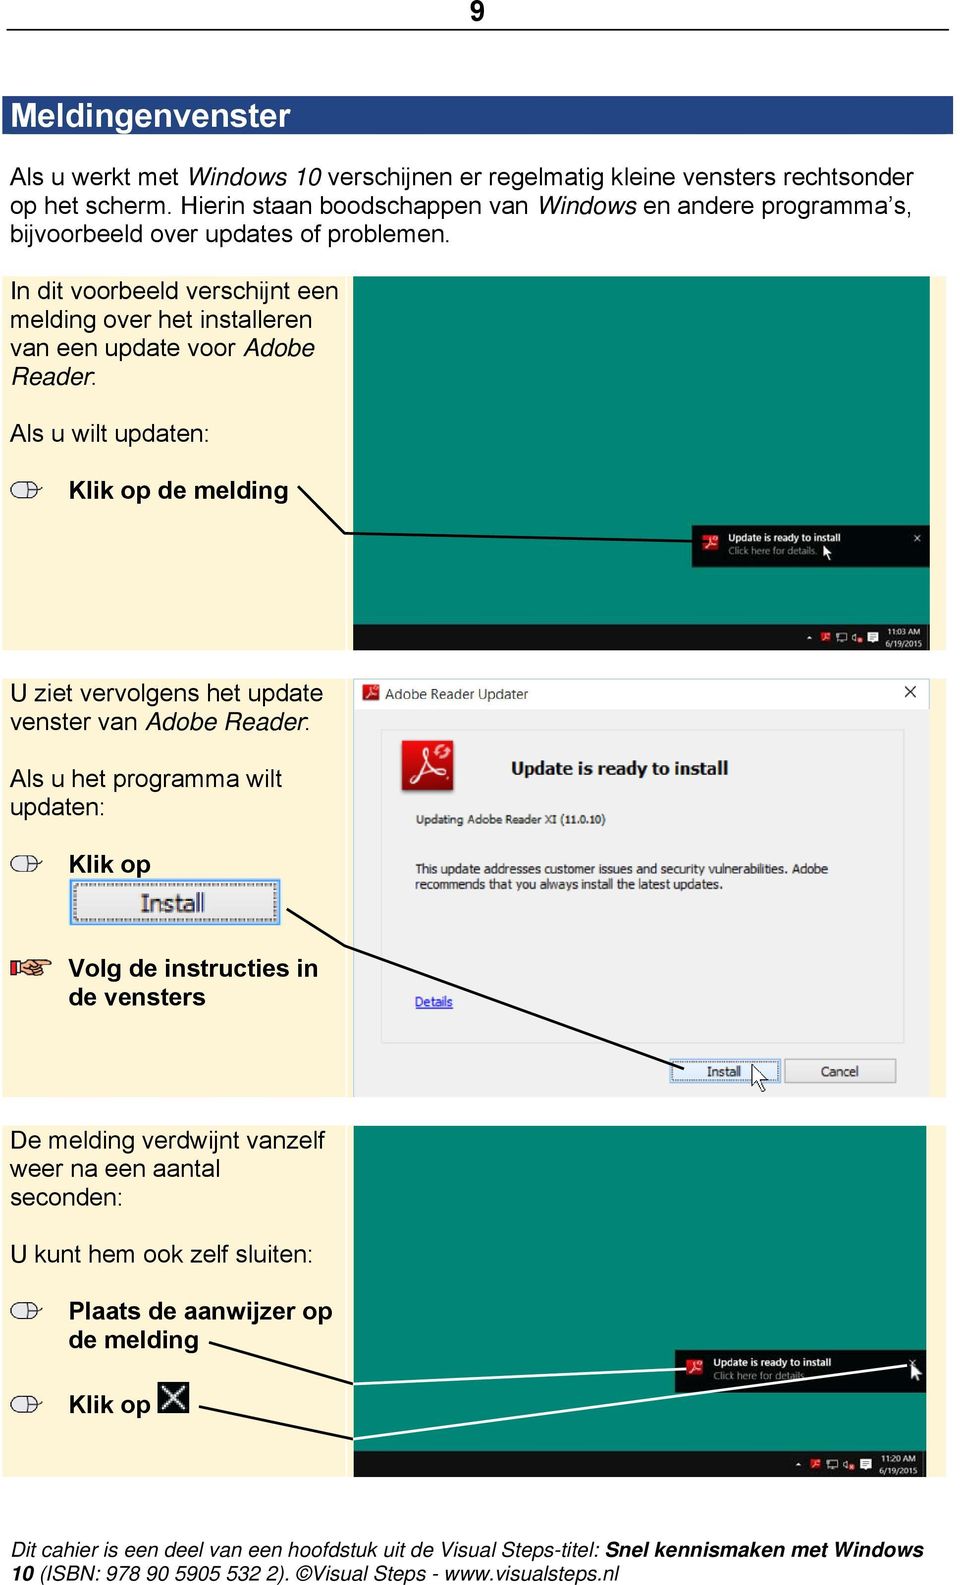 In dit voorbeeld verschijnt een melding over het installeren van een update voor Adobe Reader: Als u wilt updaten: de melding U ziet vervolgens